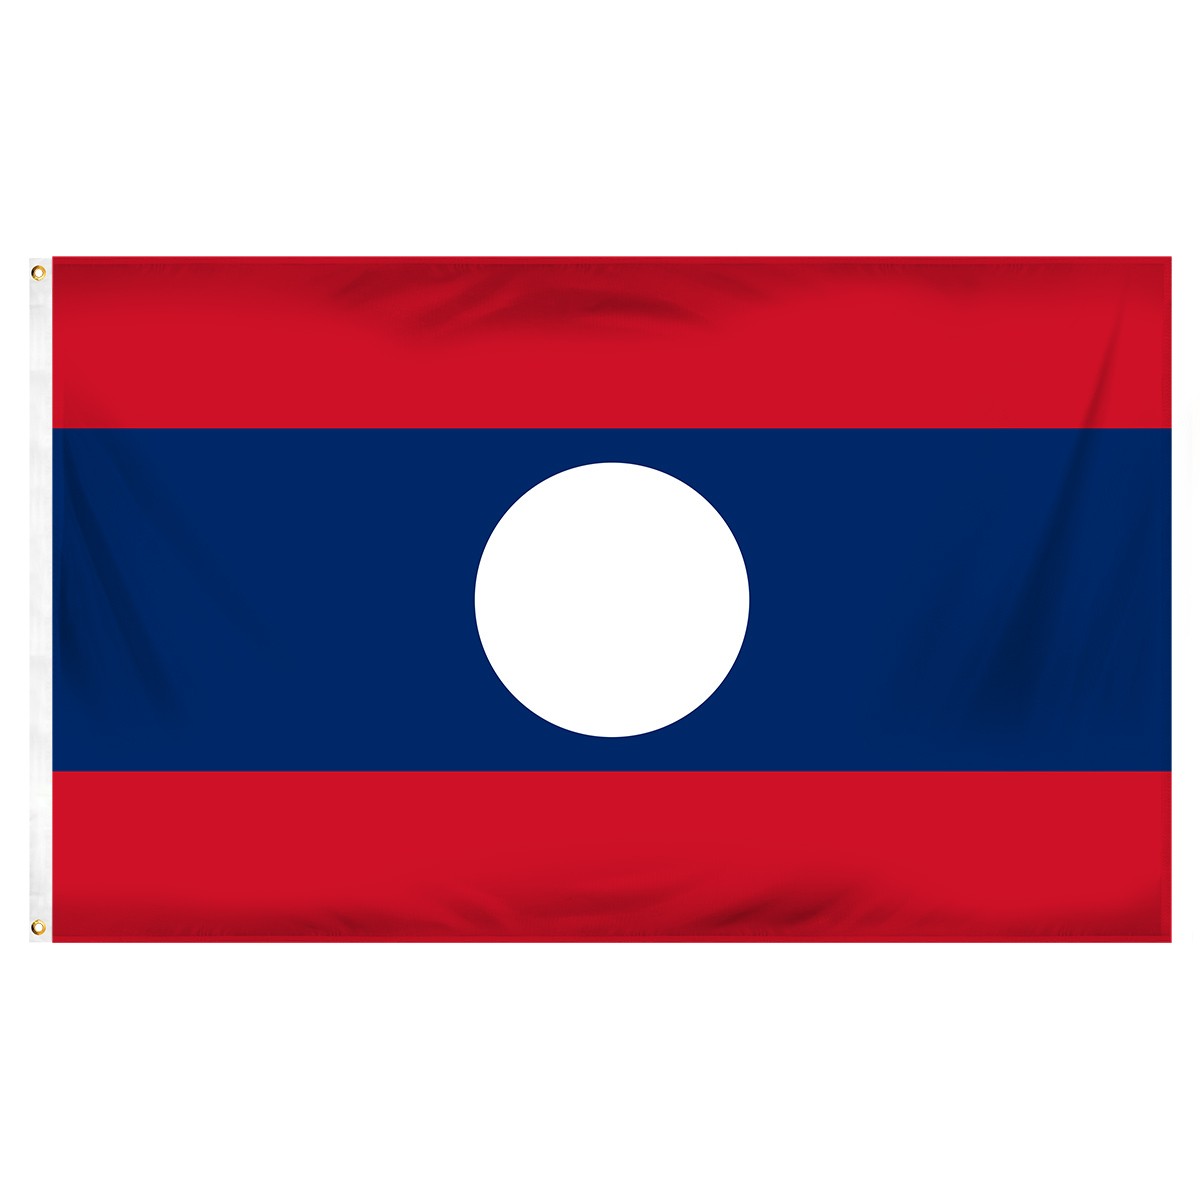 Laos Executive Flags